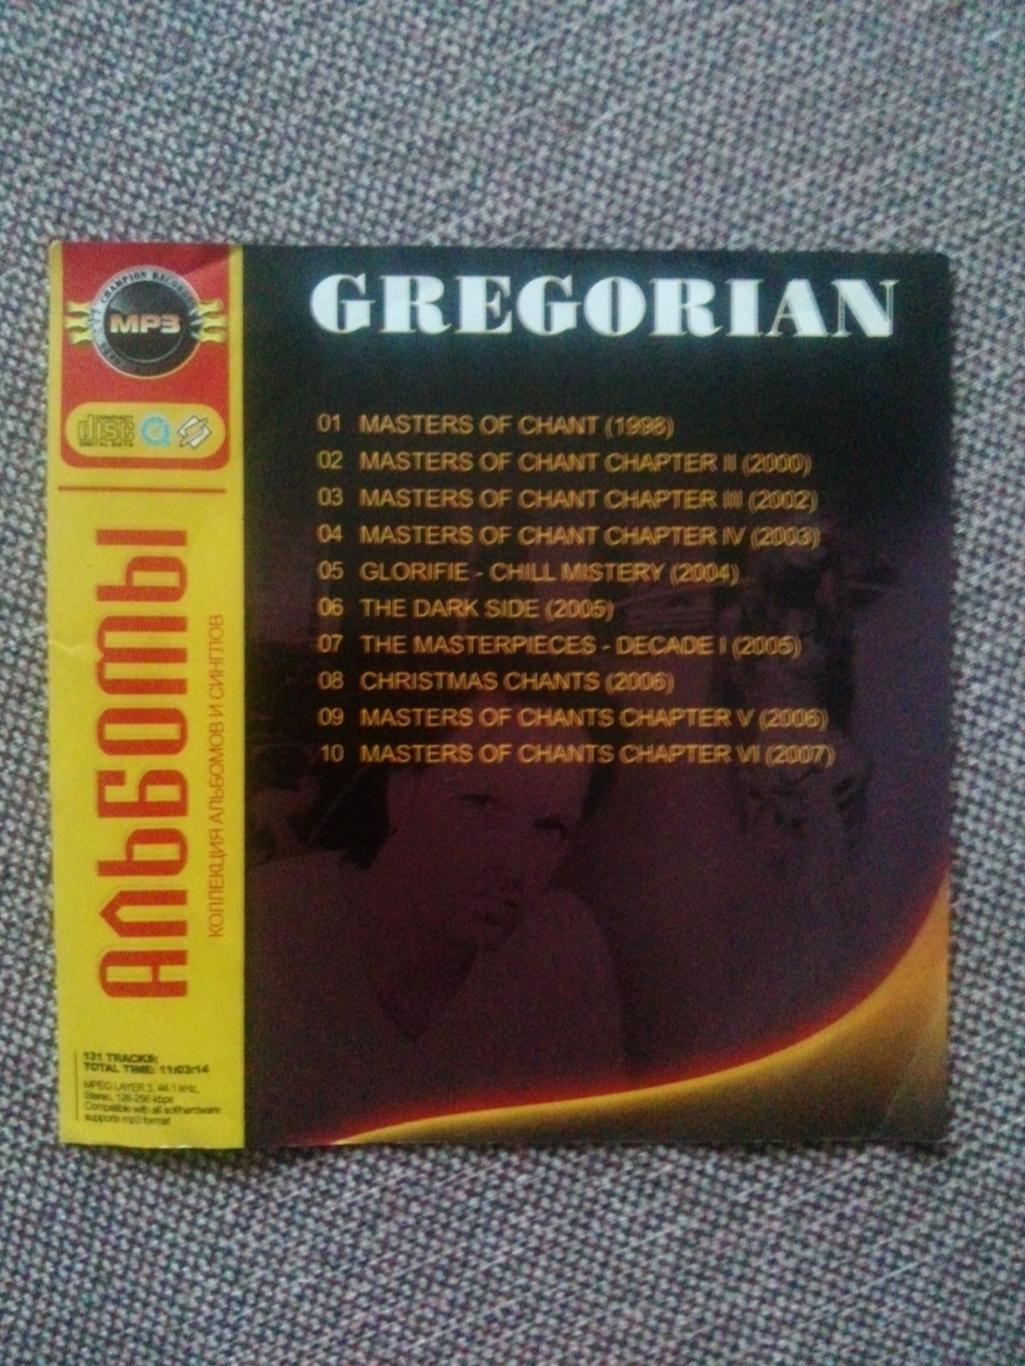 MP - 3 CD : группа Gregorian 1998 - 2007 гг. (10 альбомов) Рок - музыка 1